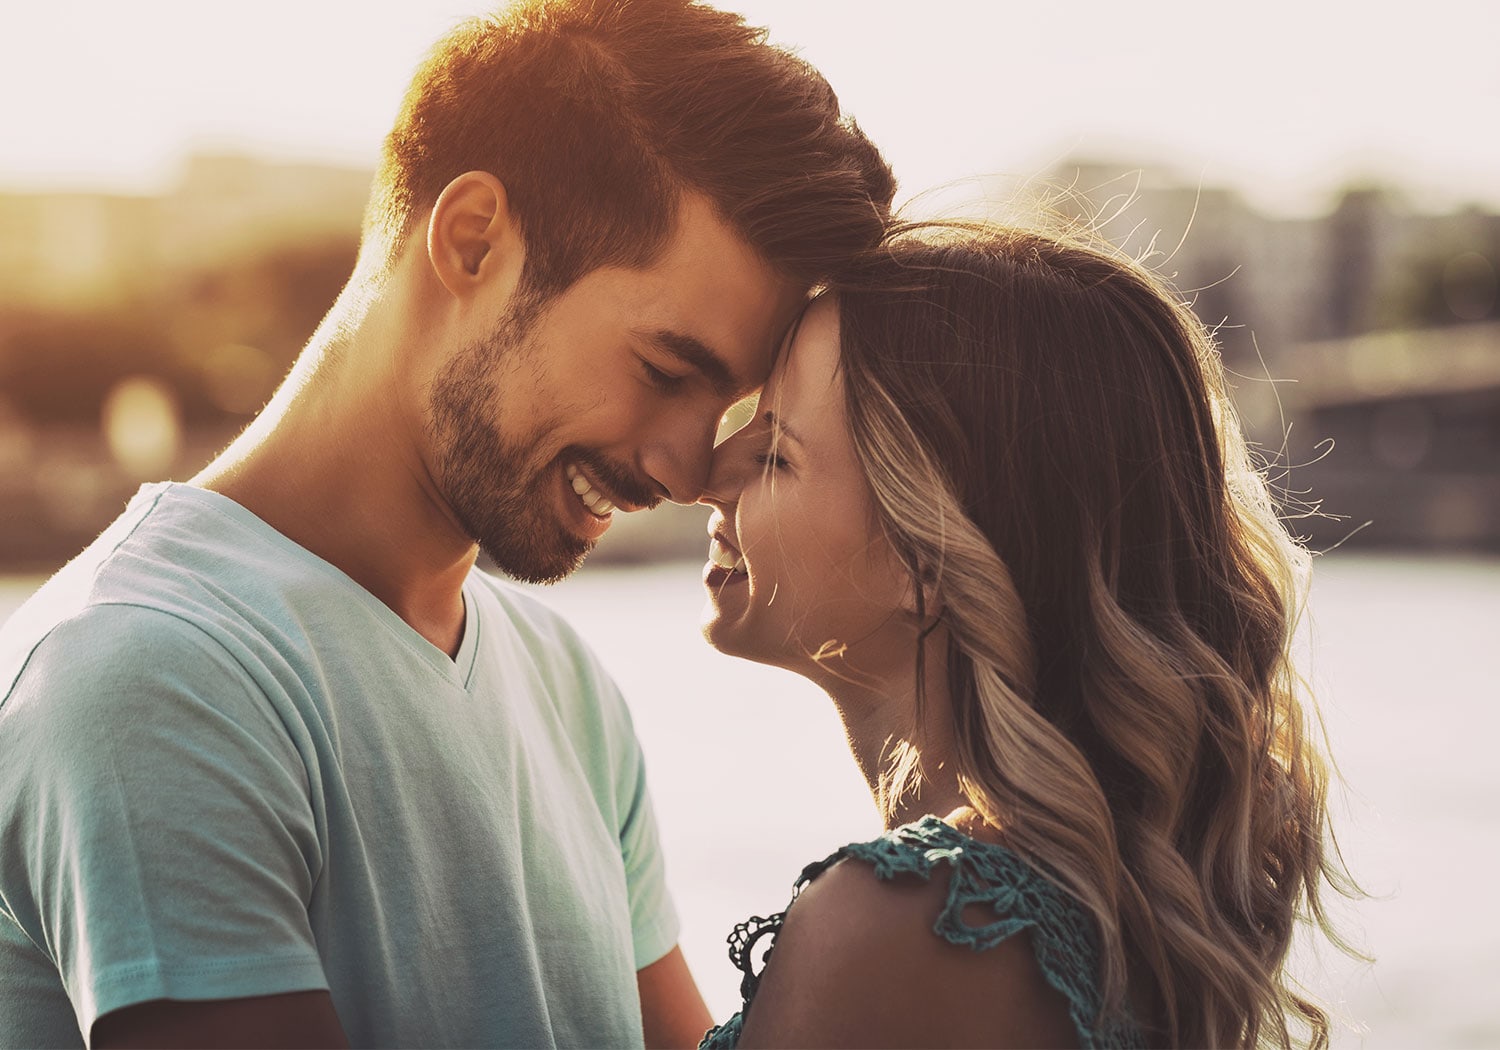 Compromiso y matrimonio: 8 signos que revelan que estáis listos